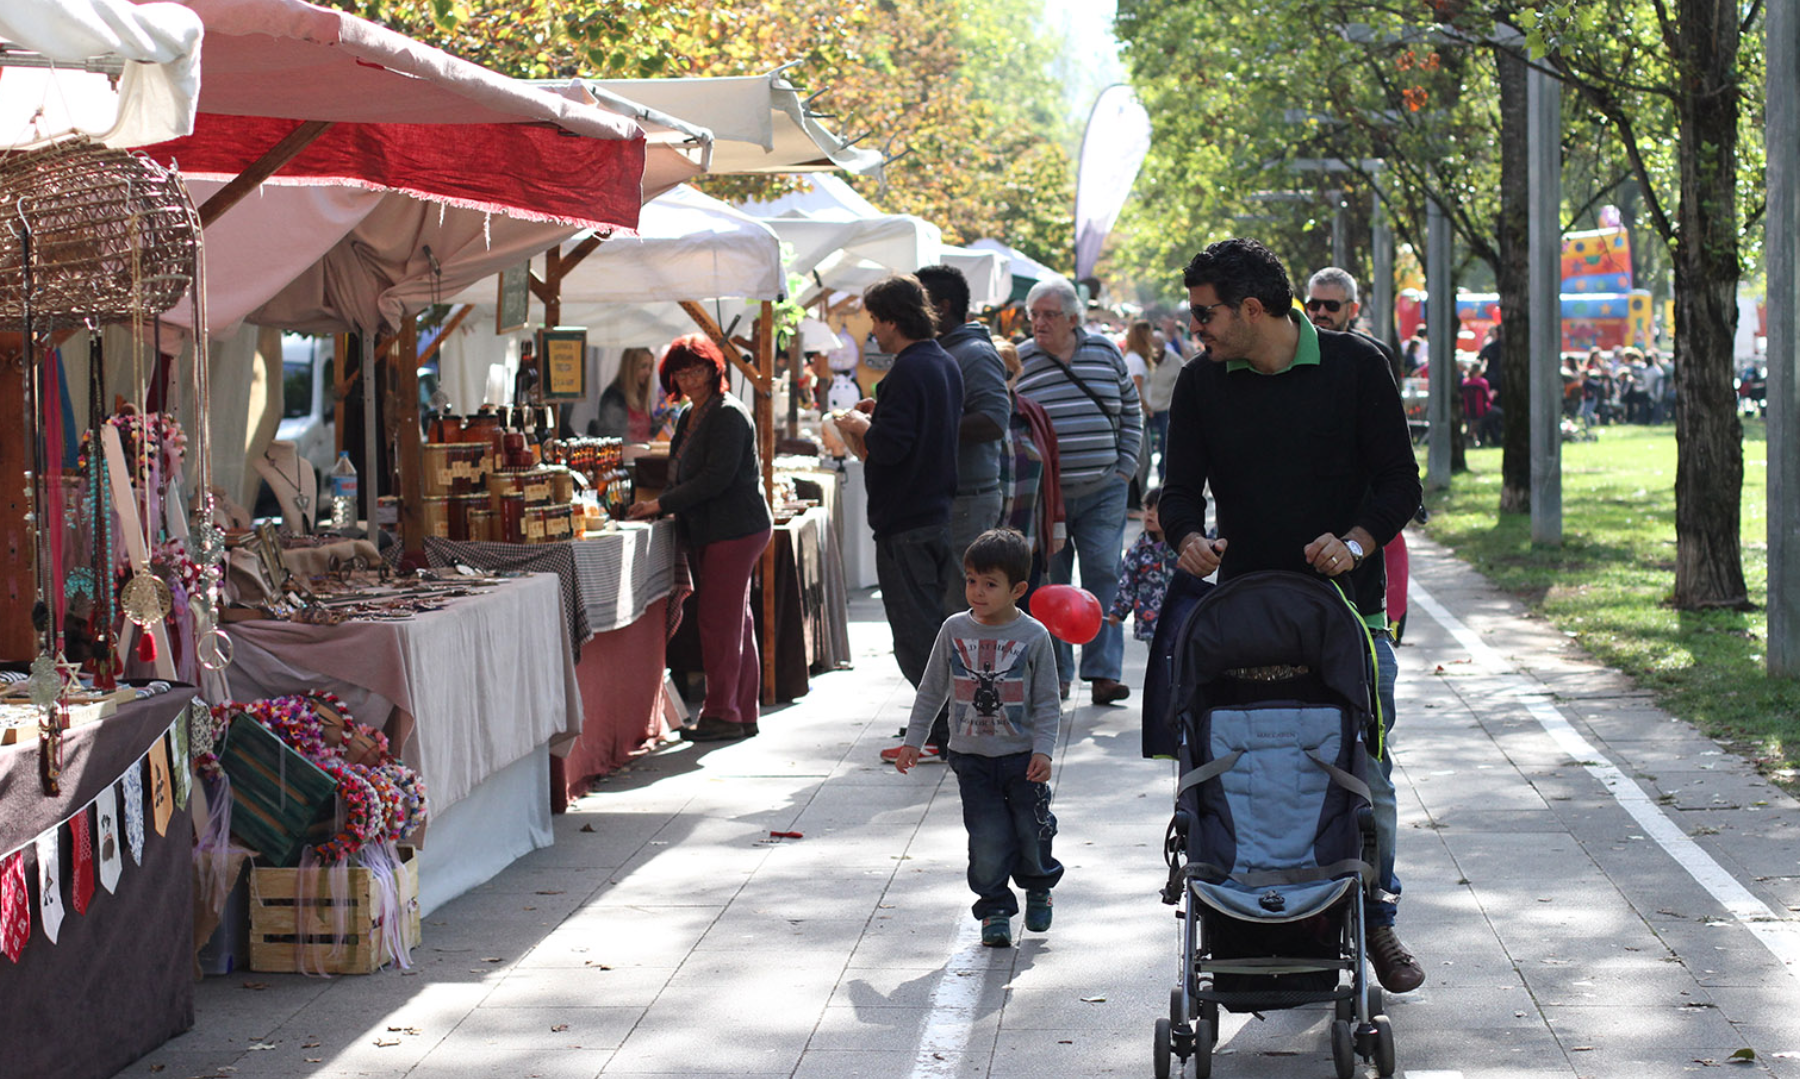 Les parades de comerços artesanals estaran obertes tot el cap de setmana al passeig de Francesc Macià FOTO: Haidy Blanch